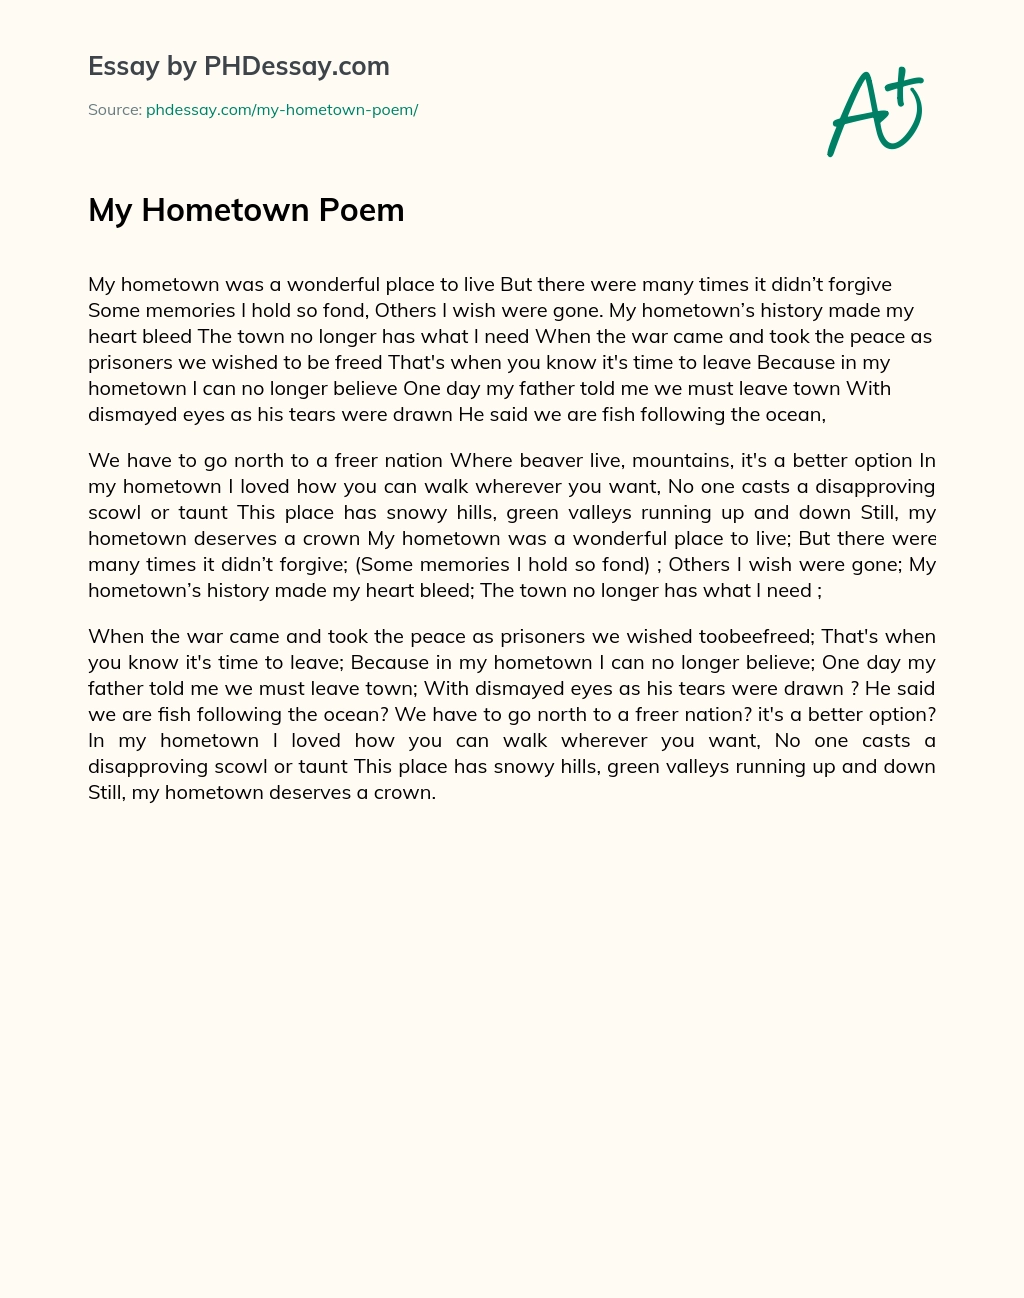 My Hometown Poem essay